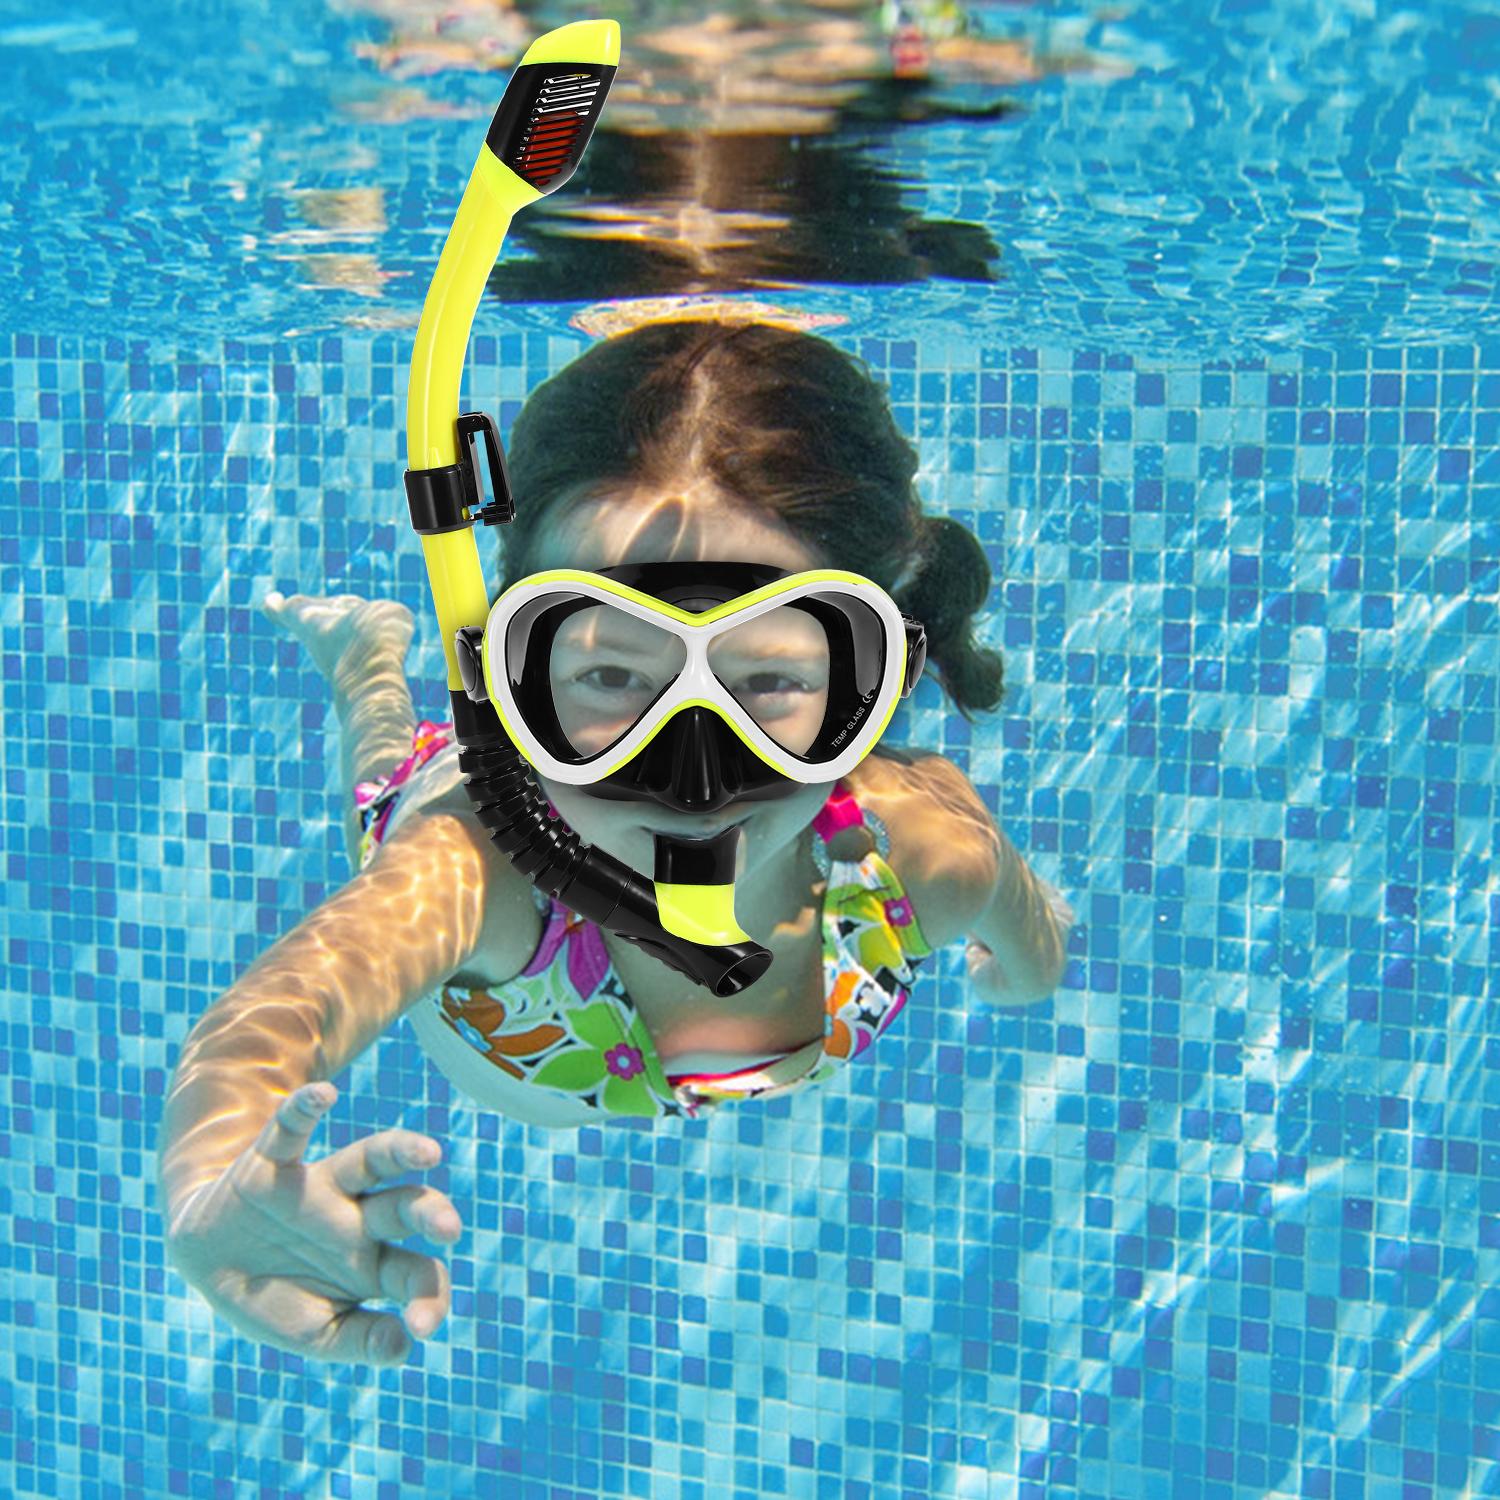 Kính Bơi Chuyên Nghiệp chống sương với ống thở khô dành cho Trẻ Em